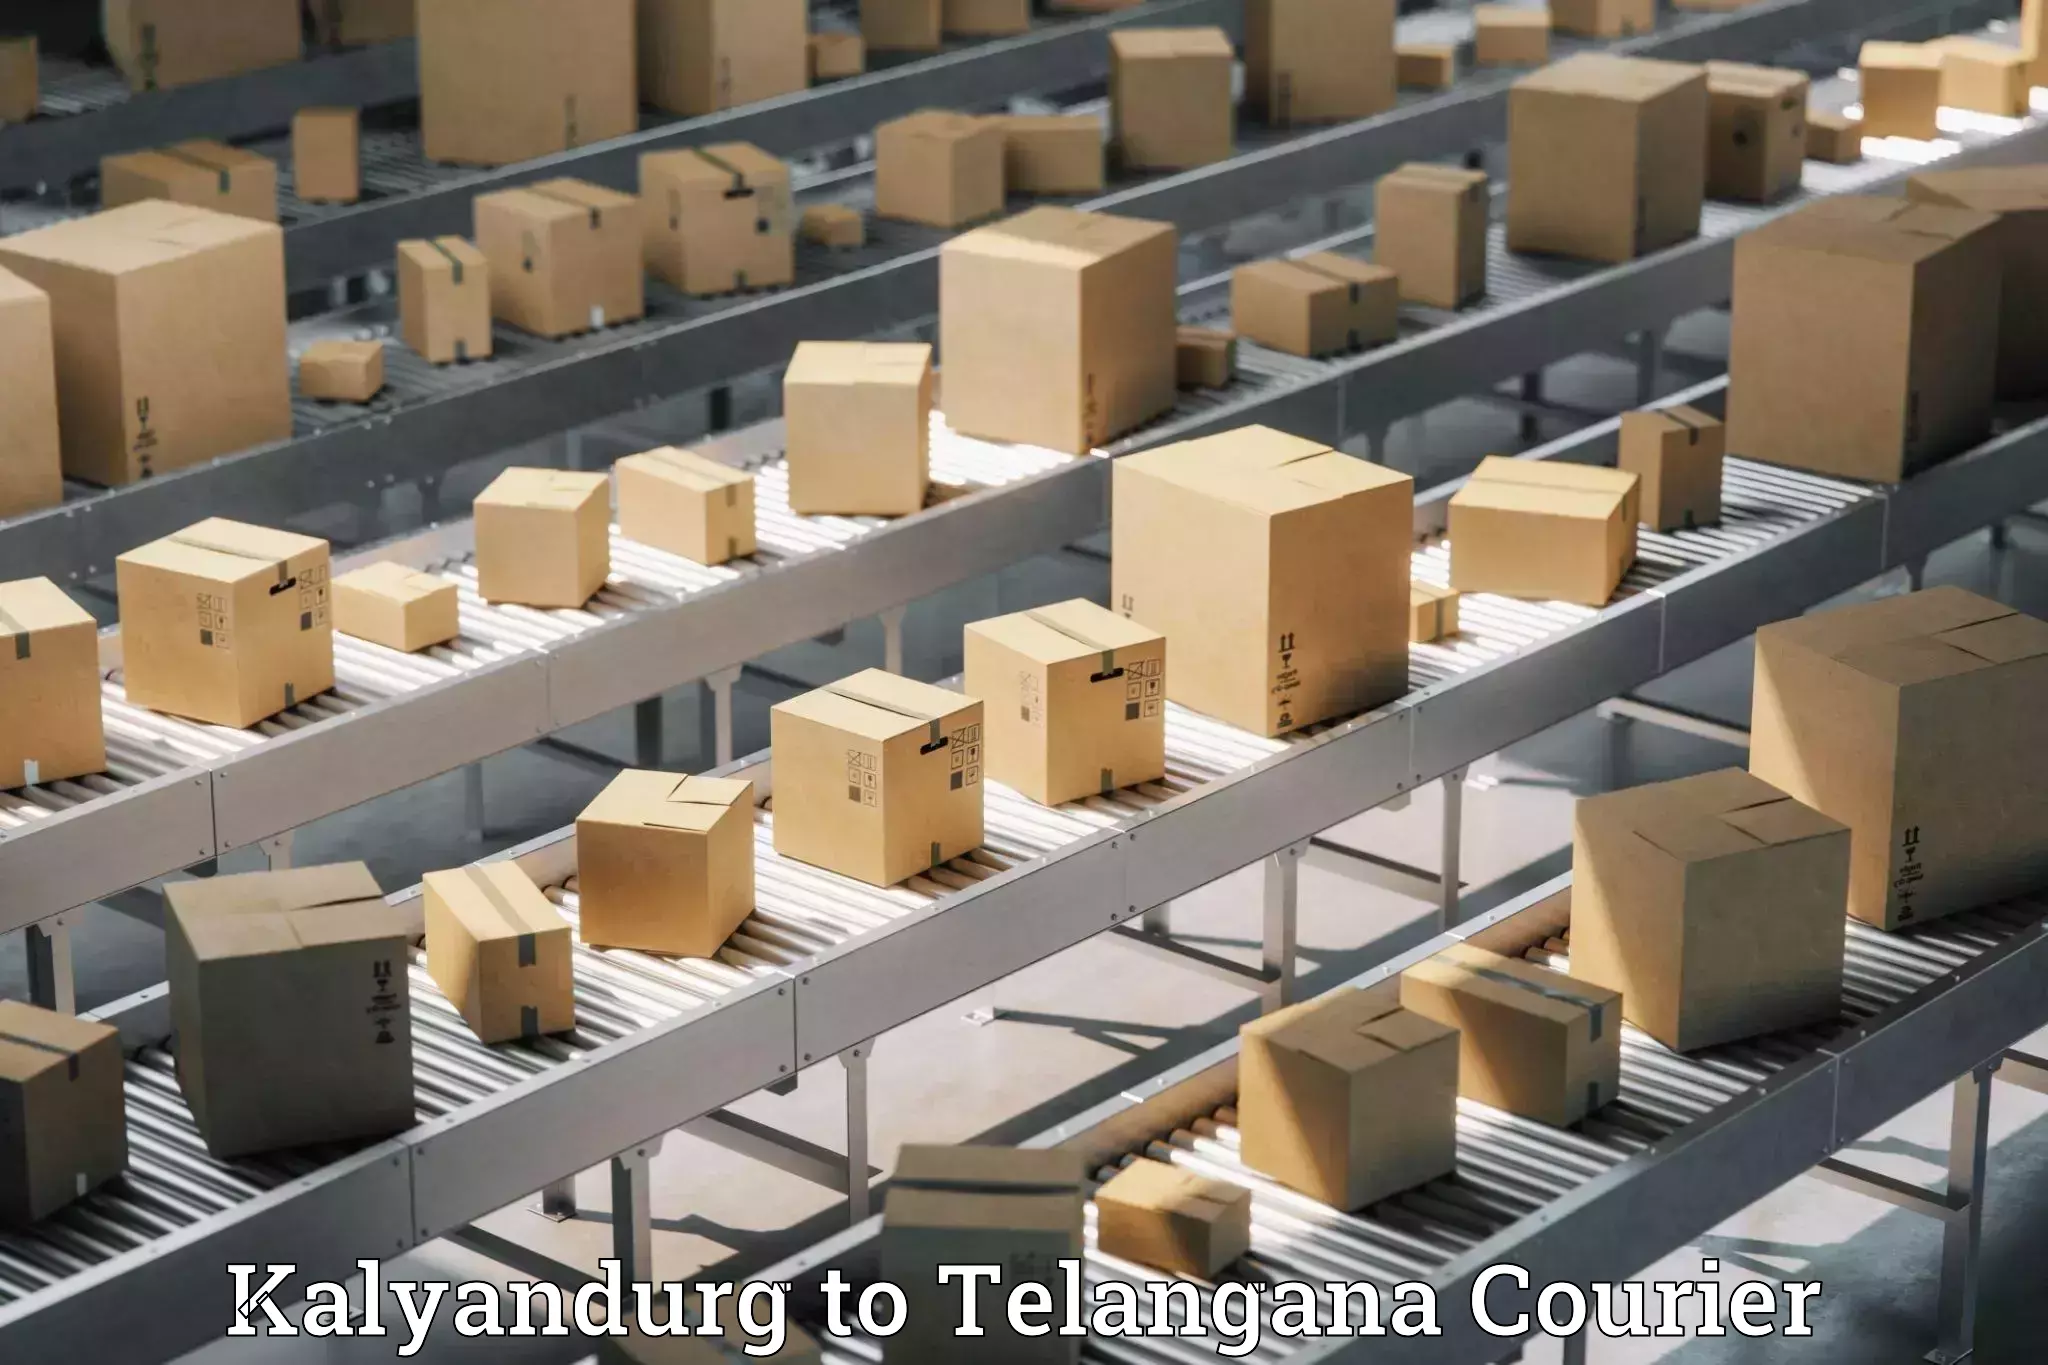 Reliable parcel services Kalyandurg to Yerrupalem